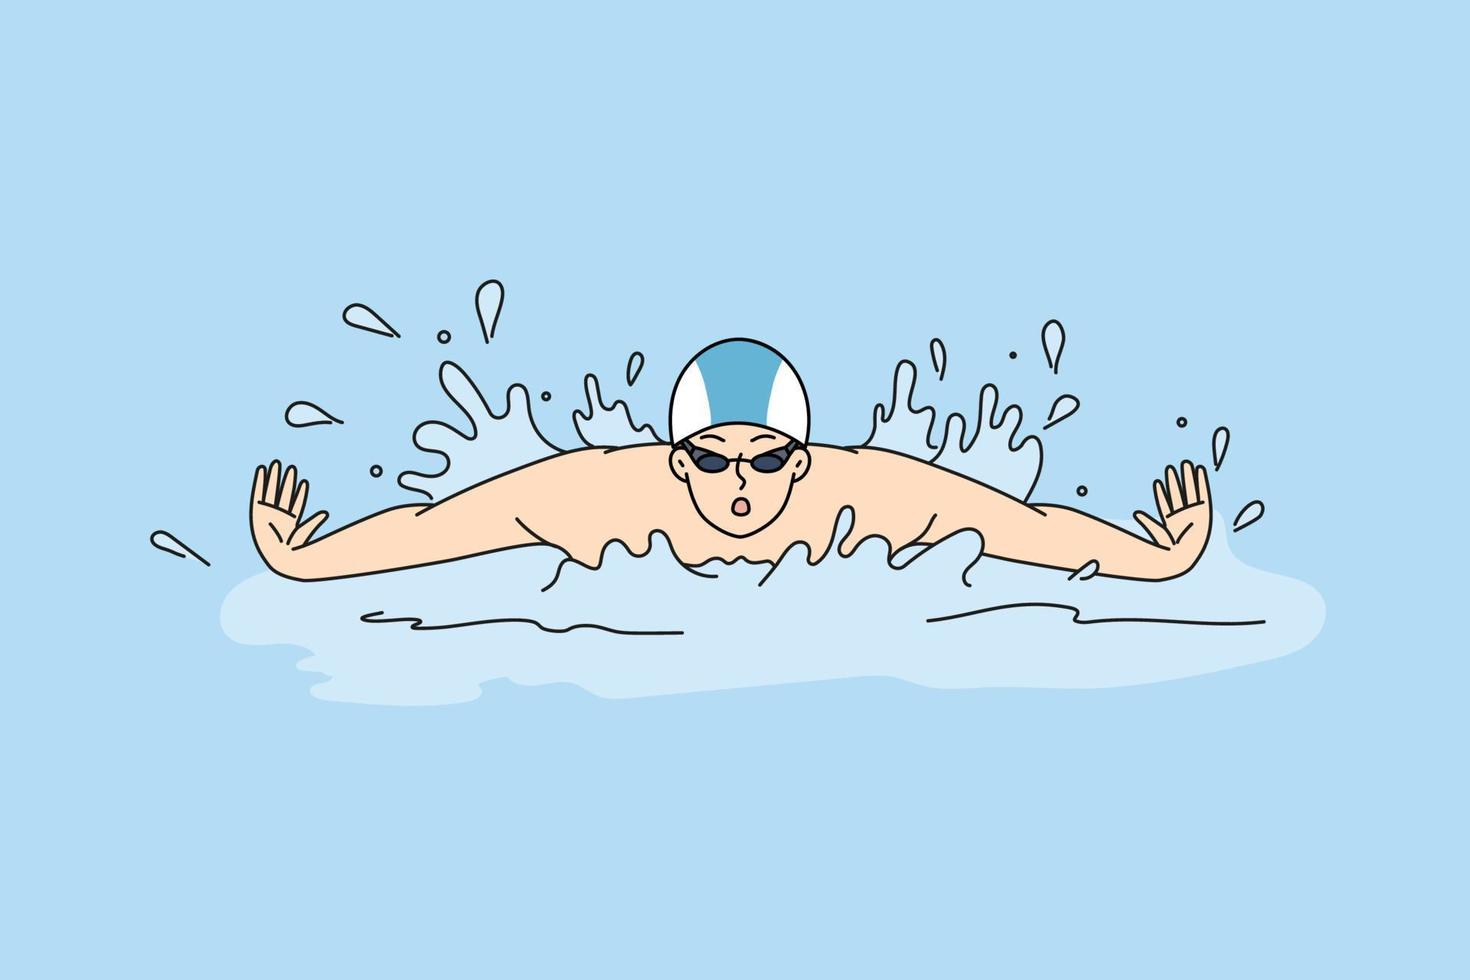 idrottare simning i opinionsundersökning Träning för tävling eller konkurrens. sportsman simmare i simning slå samman. sport och aktivitet. vektor illustration.